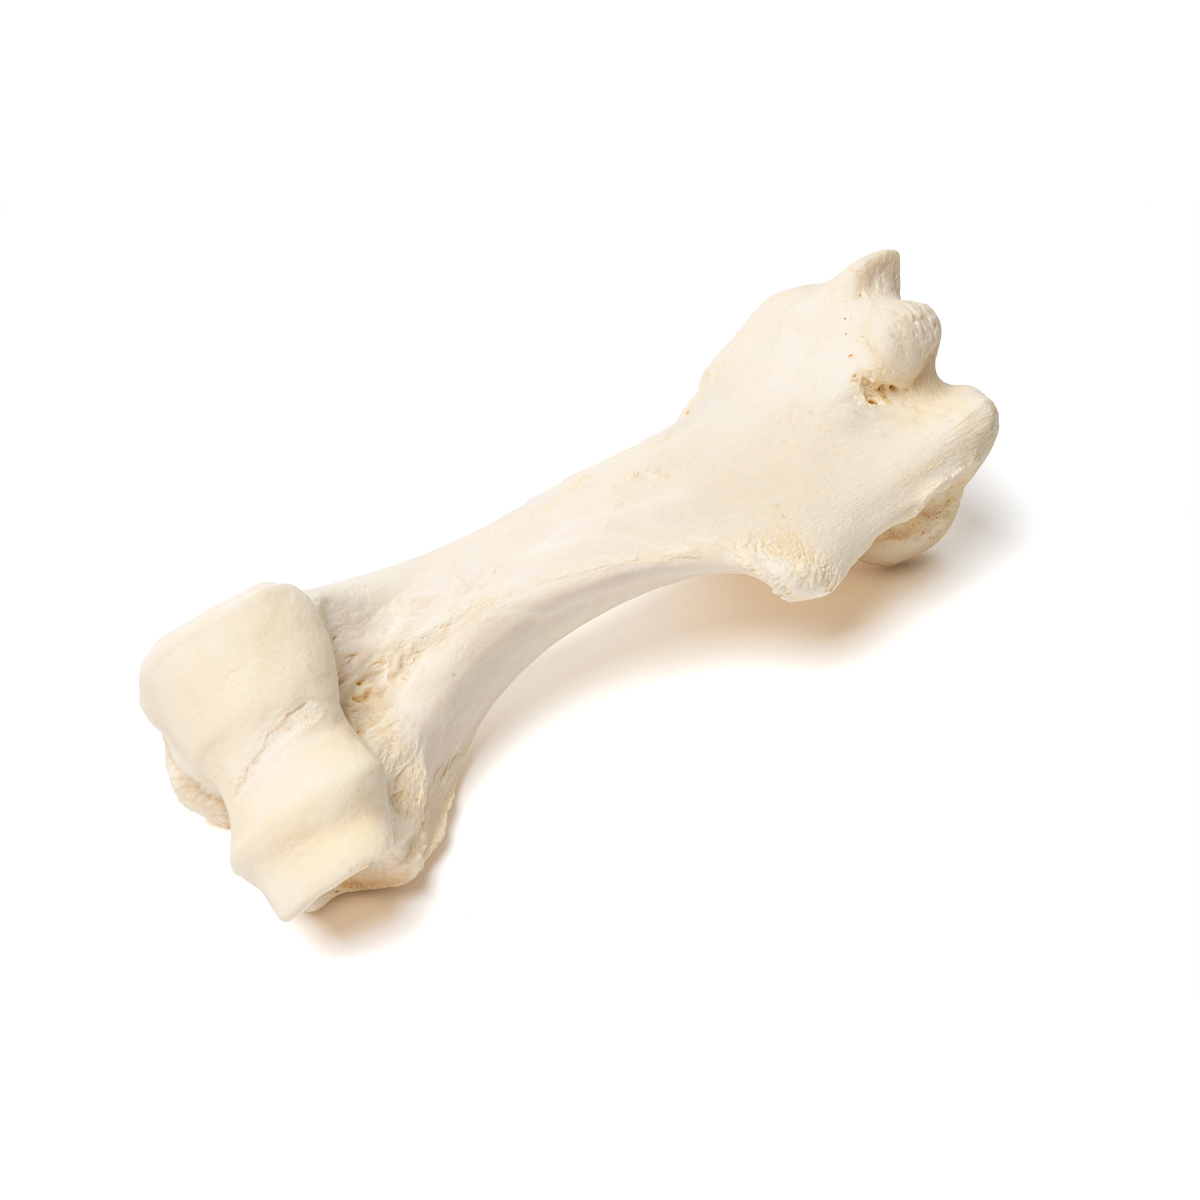 Плечевая кость млекопитающего - 1021066 - T30067 - Кости и скелеты животных  - 3B Scientific